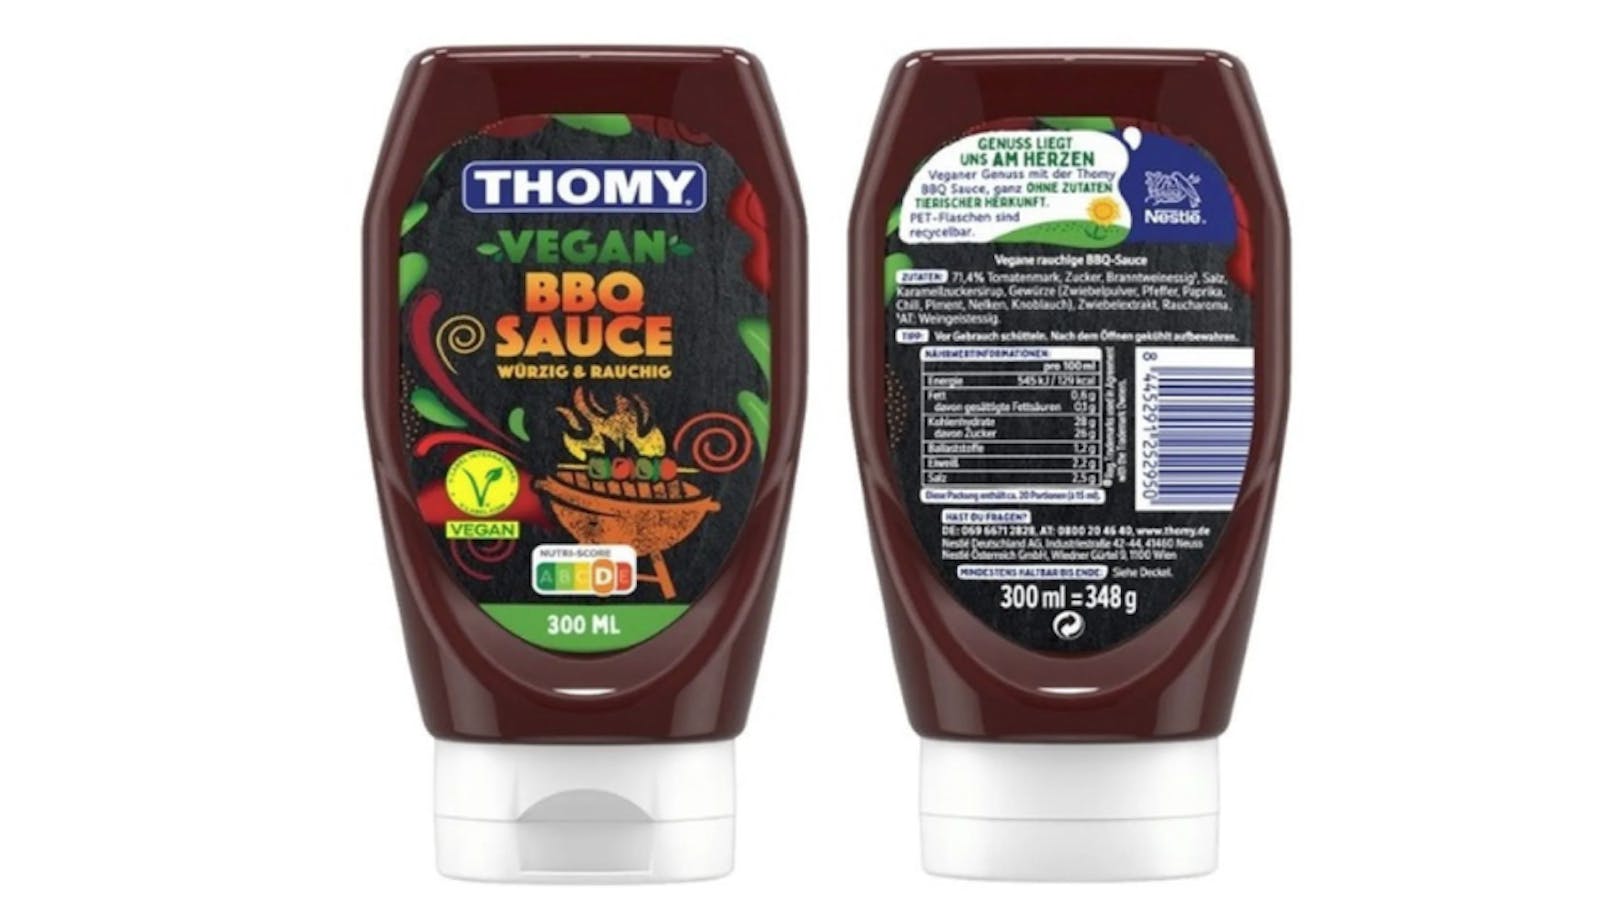 Thomy ruft seine vegane BBQ-Sauce wegen eines nicht gekennzeichneten Inhaltsstoffes zurück.